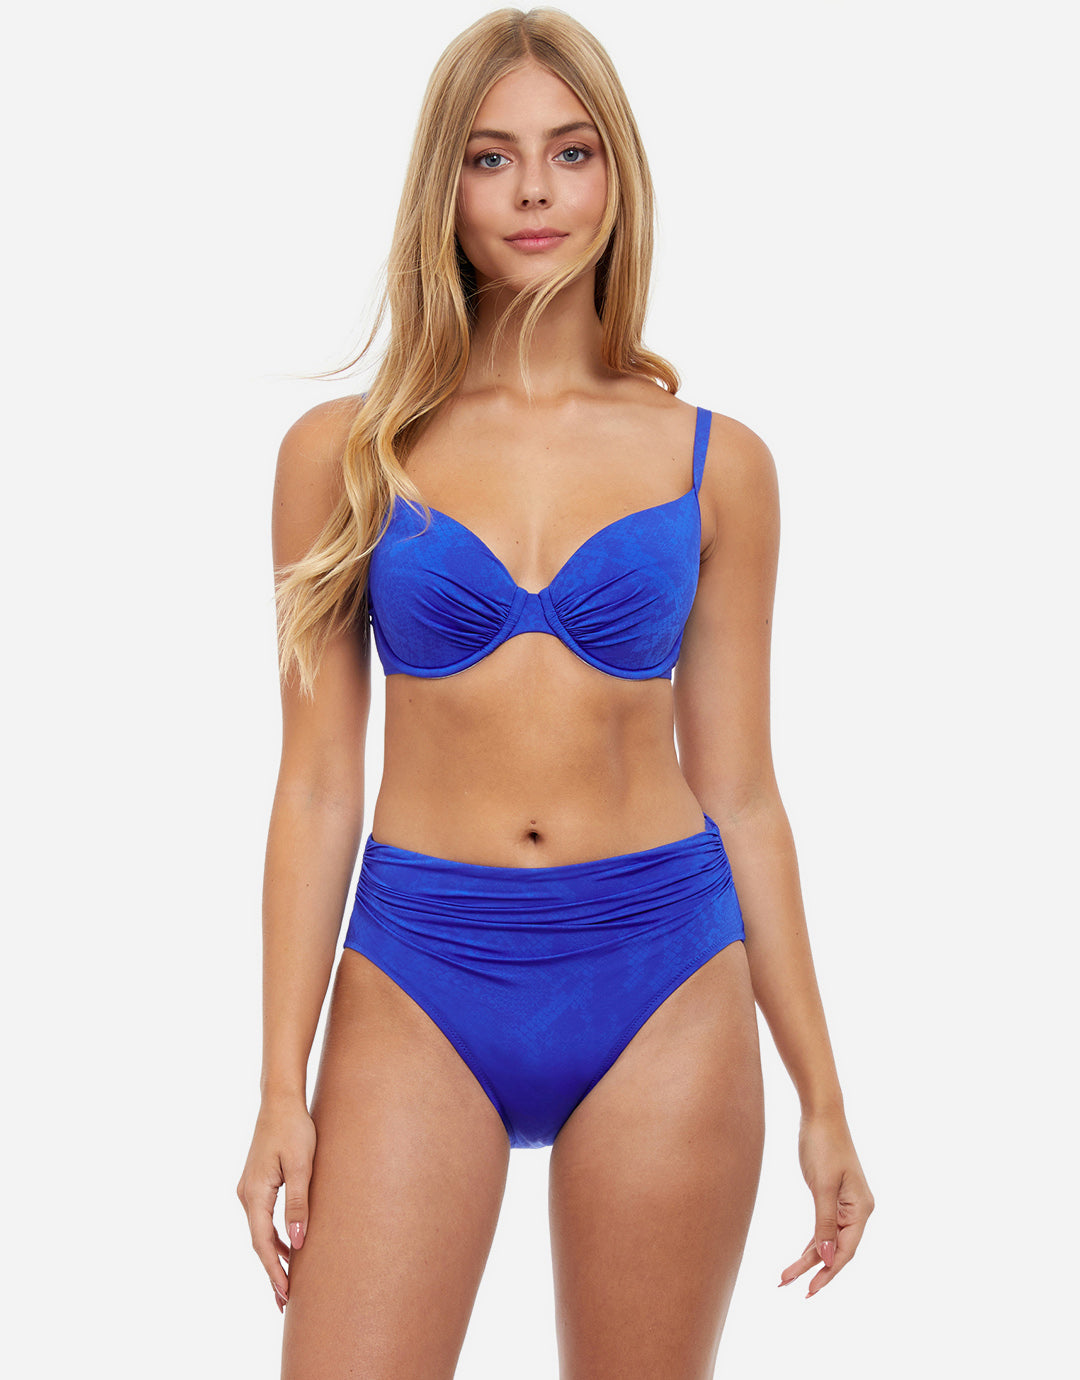 Profile Paradise D Cup Foam Bikini Top - Blue Multi